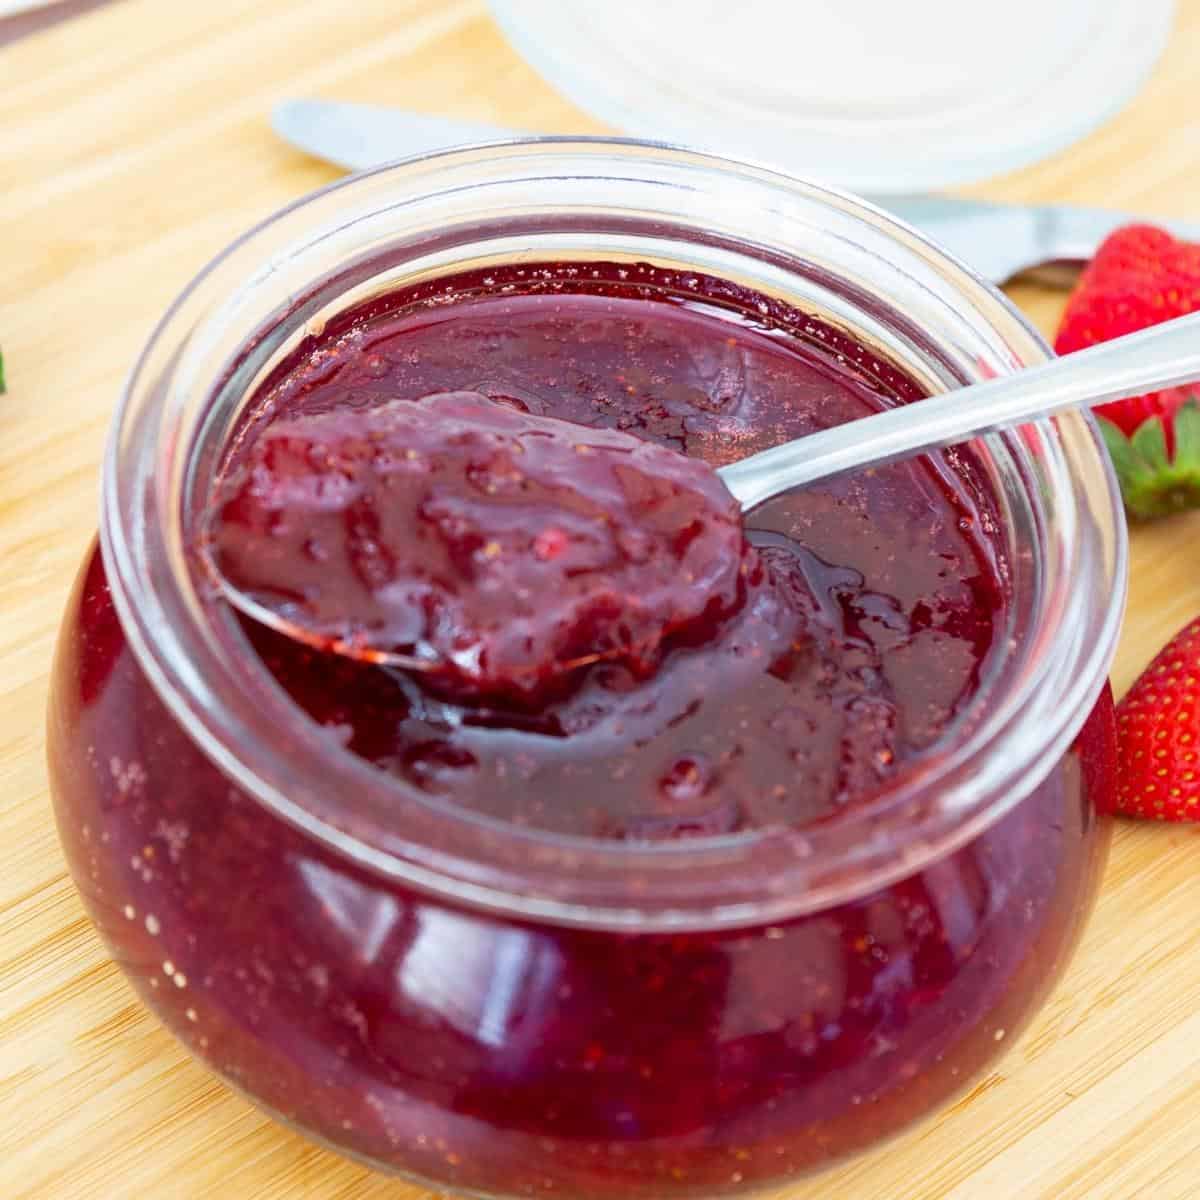 Microwave Strawberry Jam – No Pectin